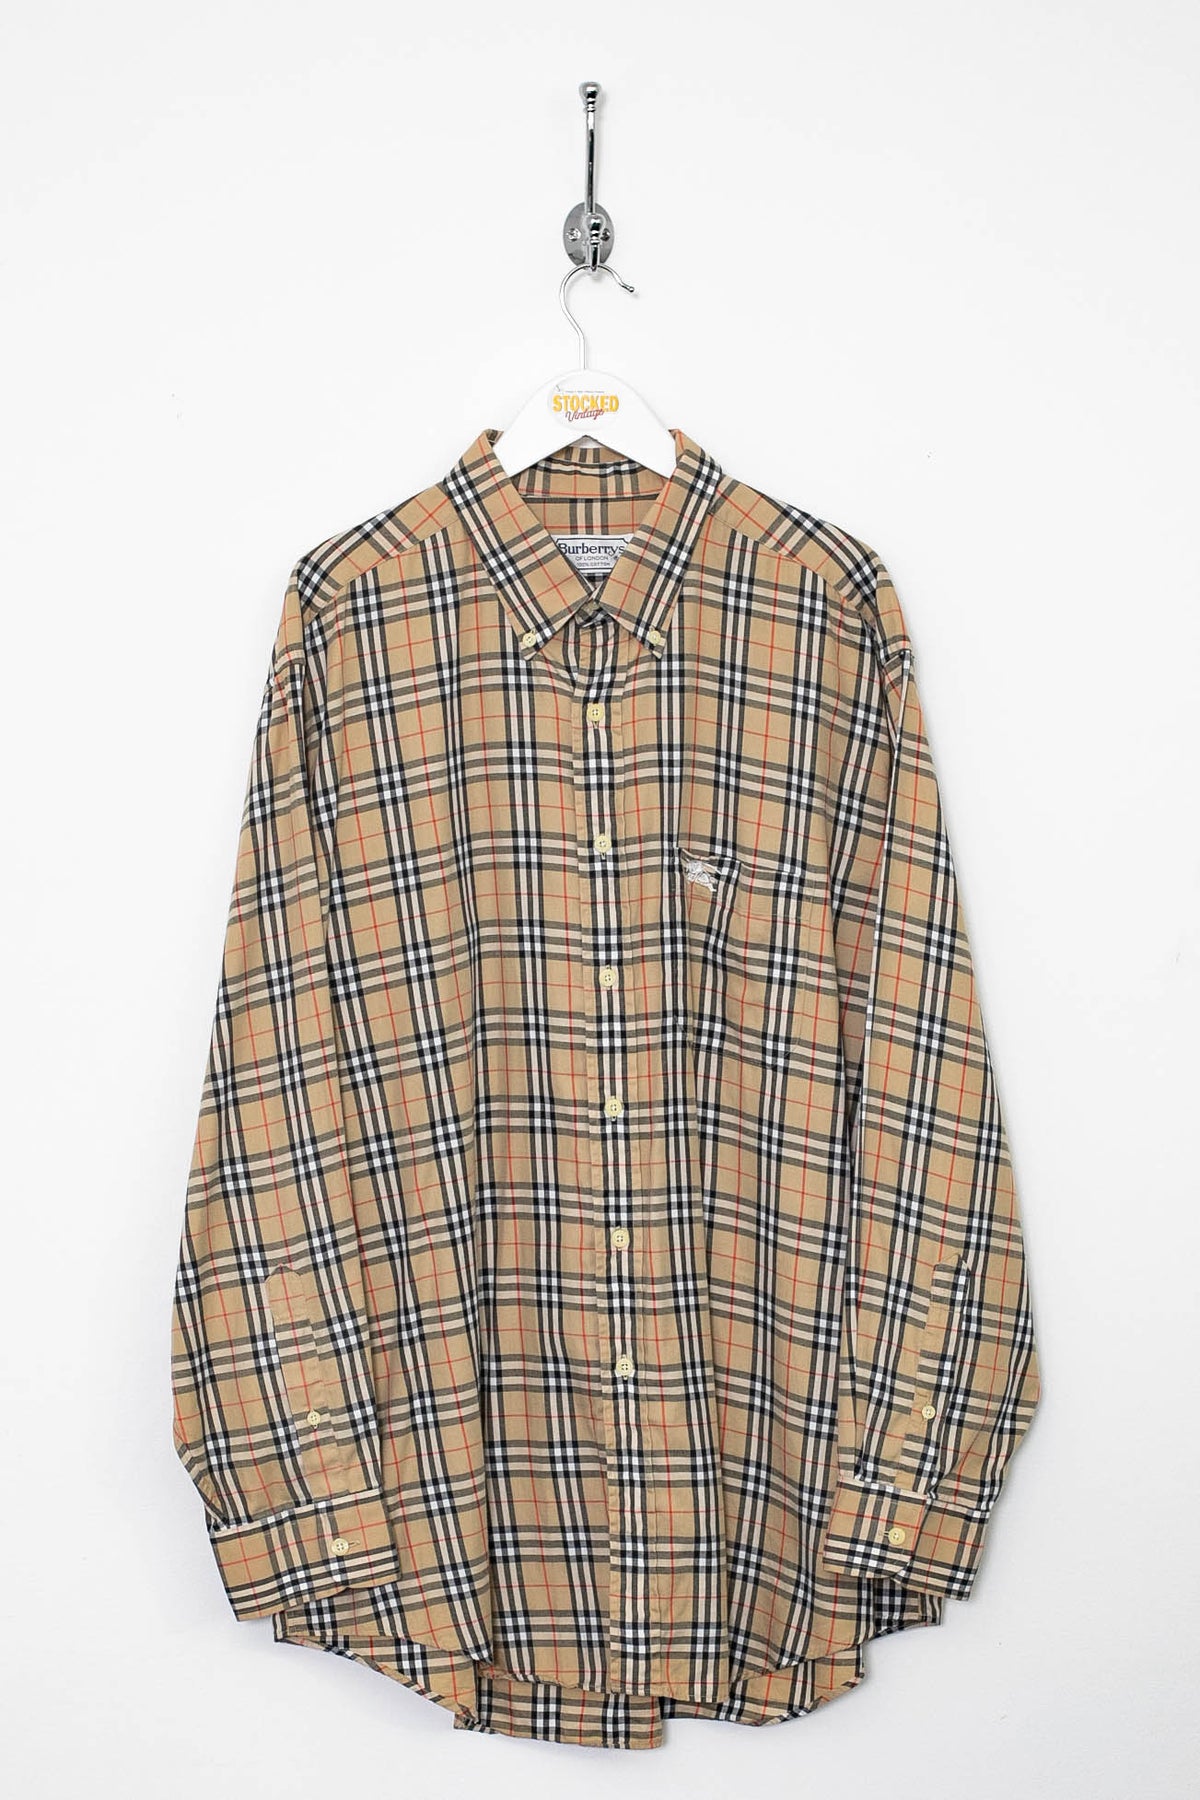 90s Burberry Nova Check Shirt (XL)